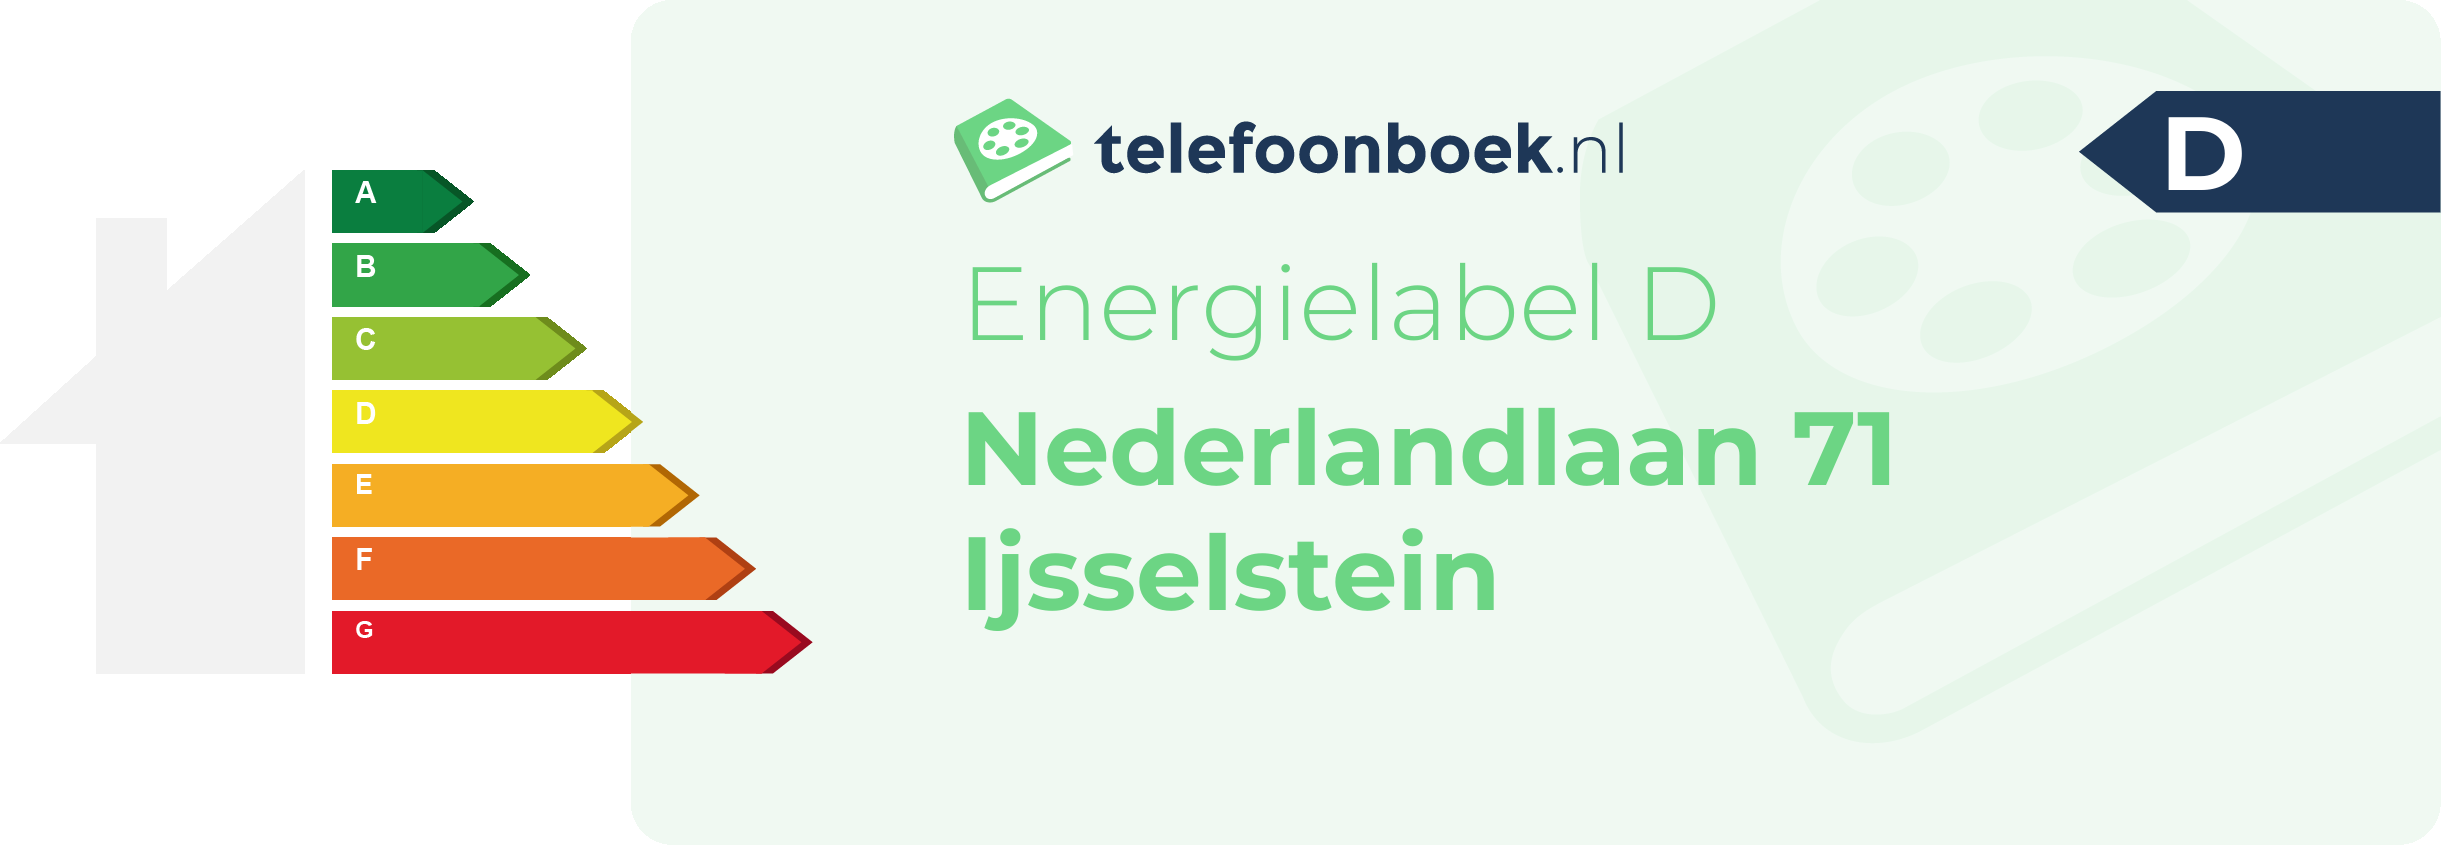 Energielabel Nederlandlaan 71 Ijsselstein